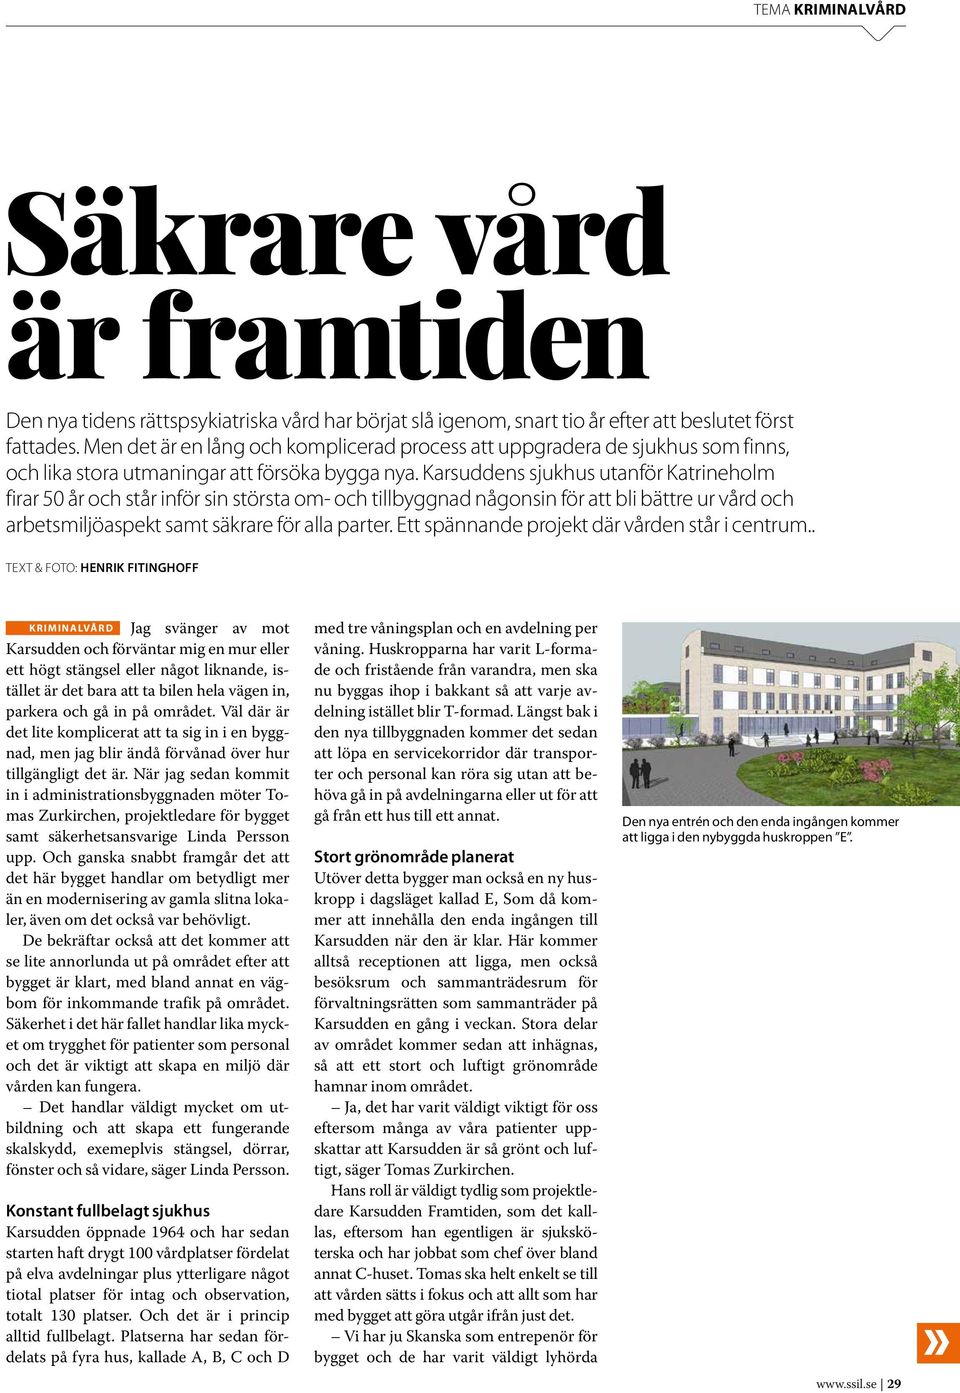 Karsuddens sjukhus utanför Katrineholm firar 50 år och står inför sin största om- och tillbyggnad någonsin för att bli bättre ur vård och arbetsmiljöaspekt samt säkrare för alla parter.